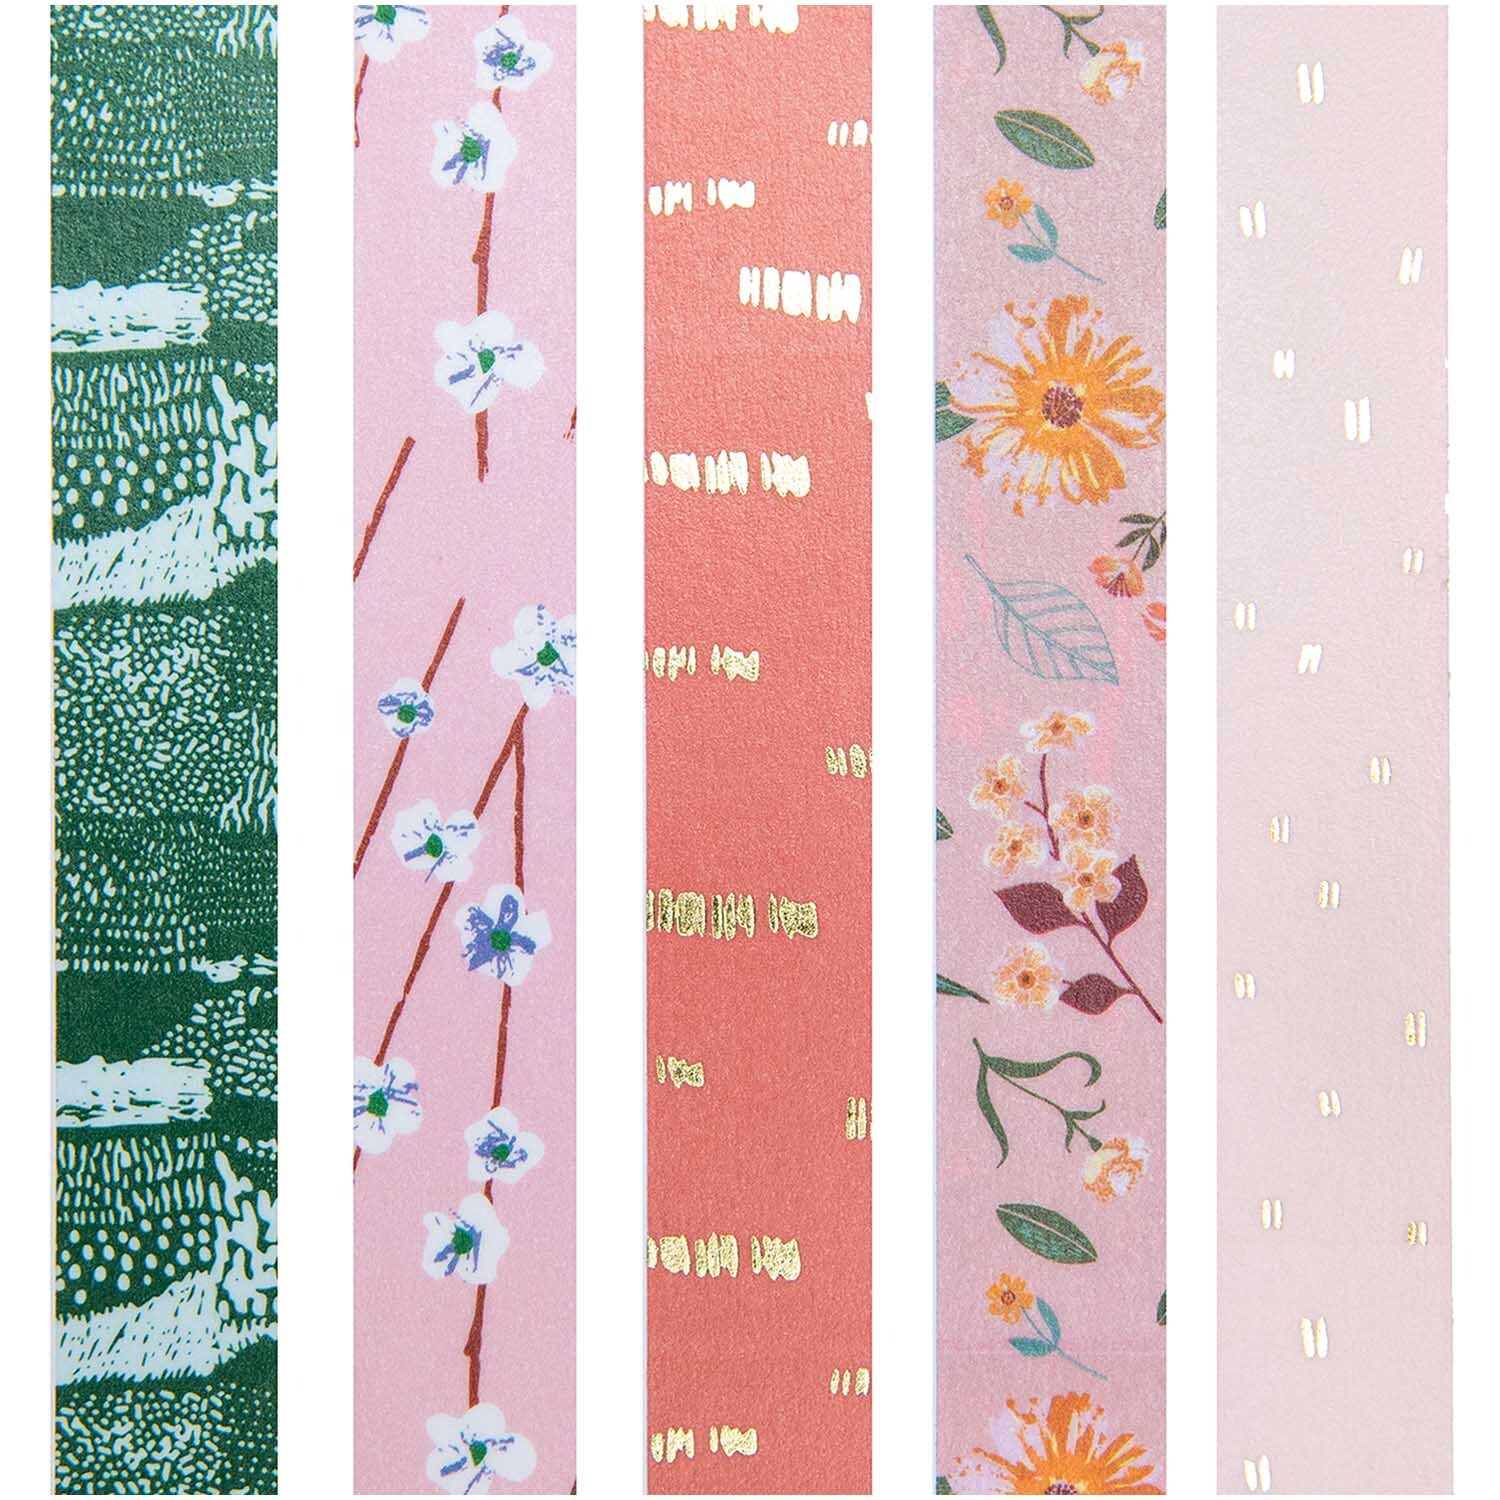 Paper Poetry Tape Set Blumen 5teilig